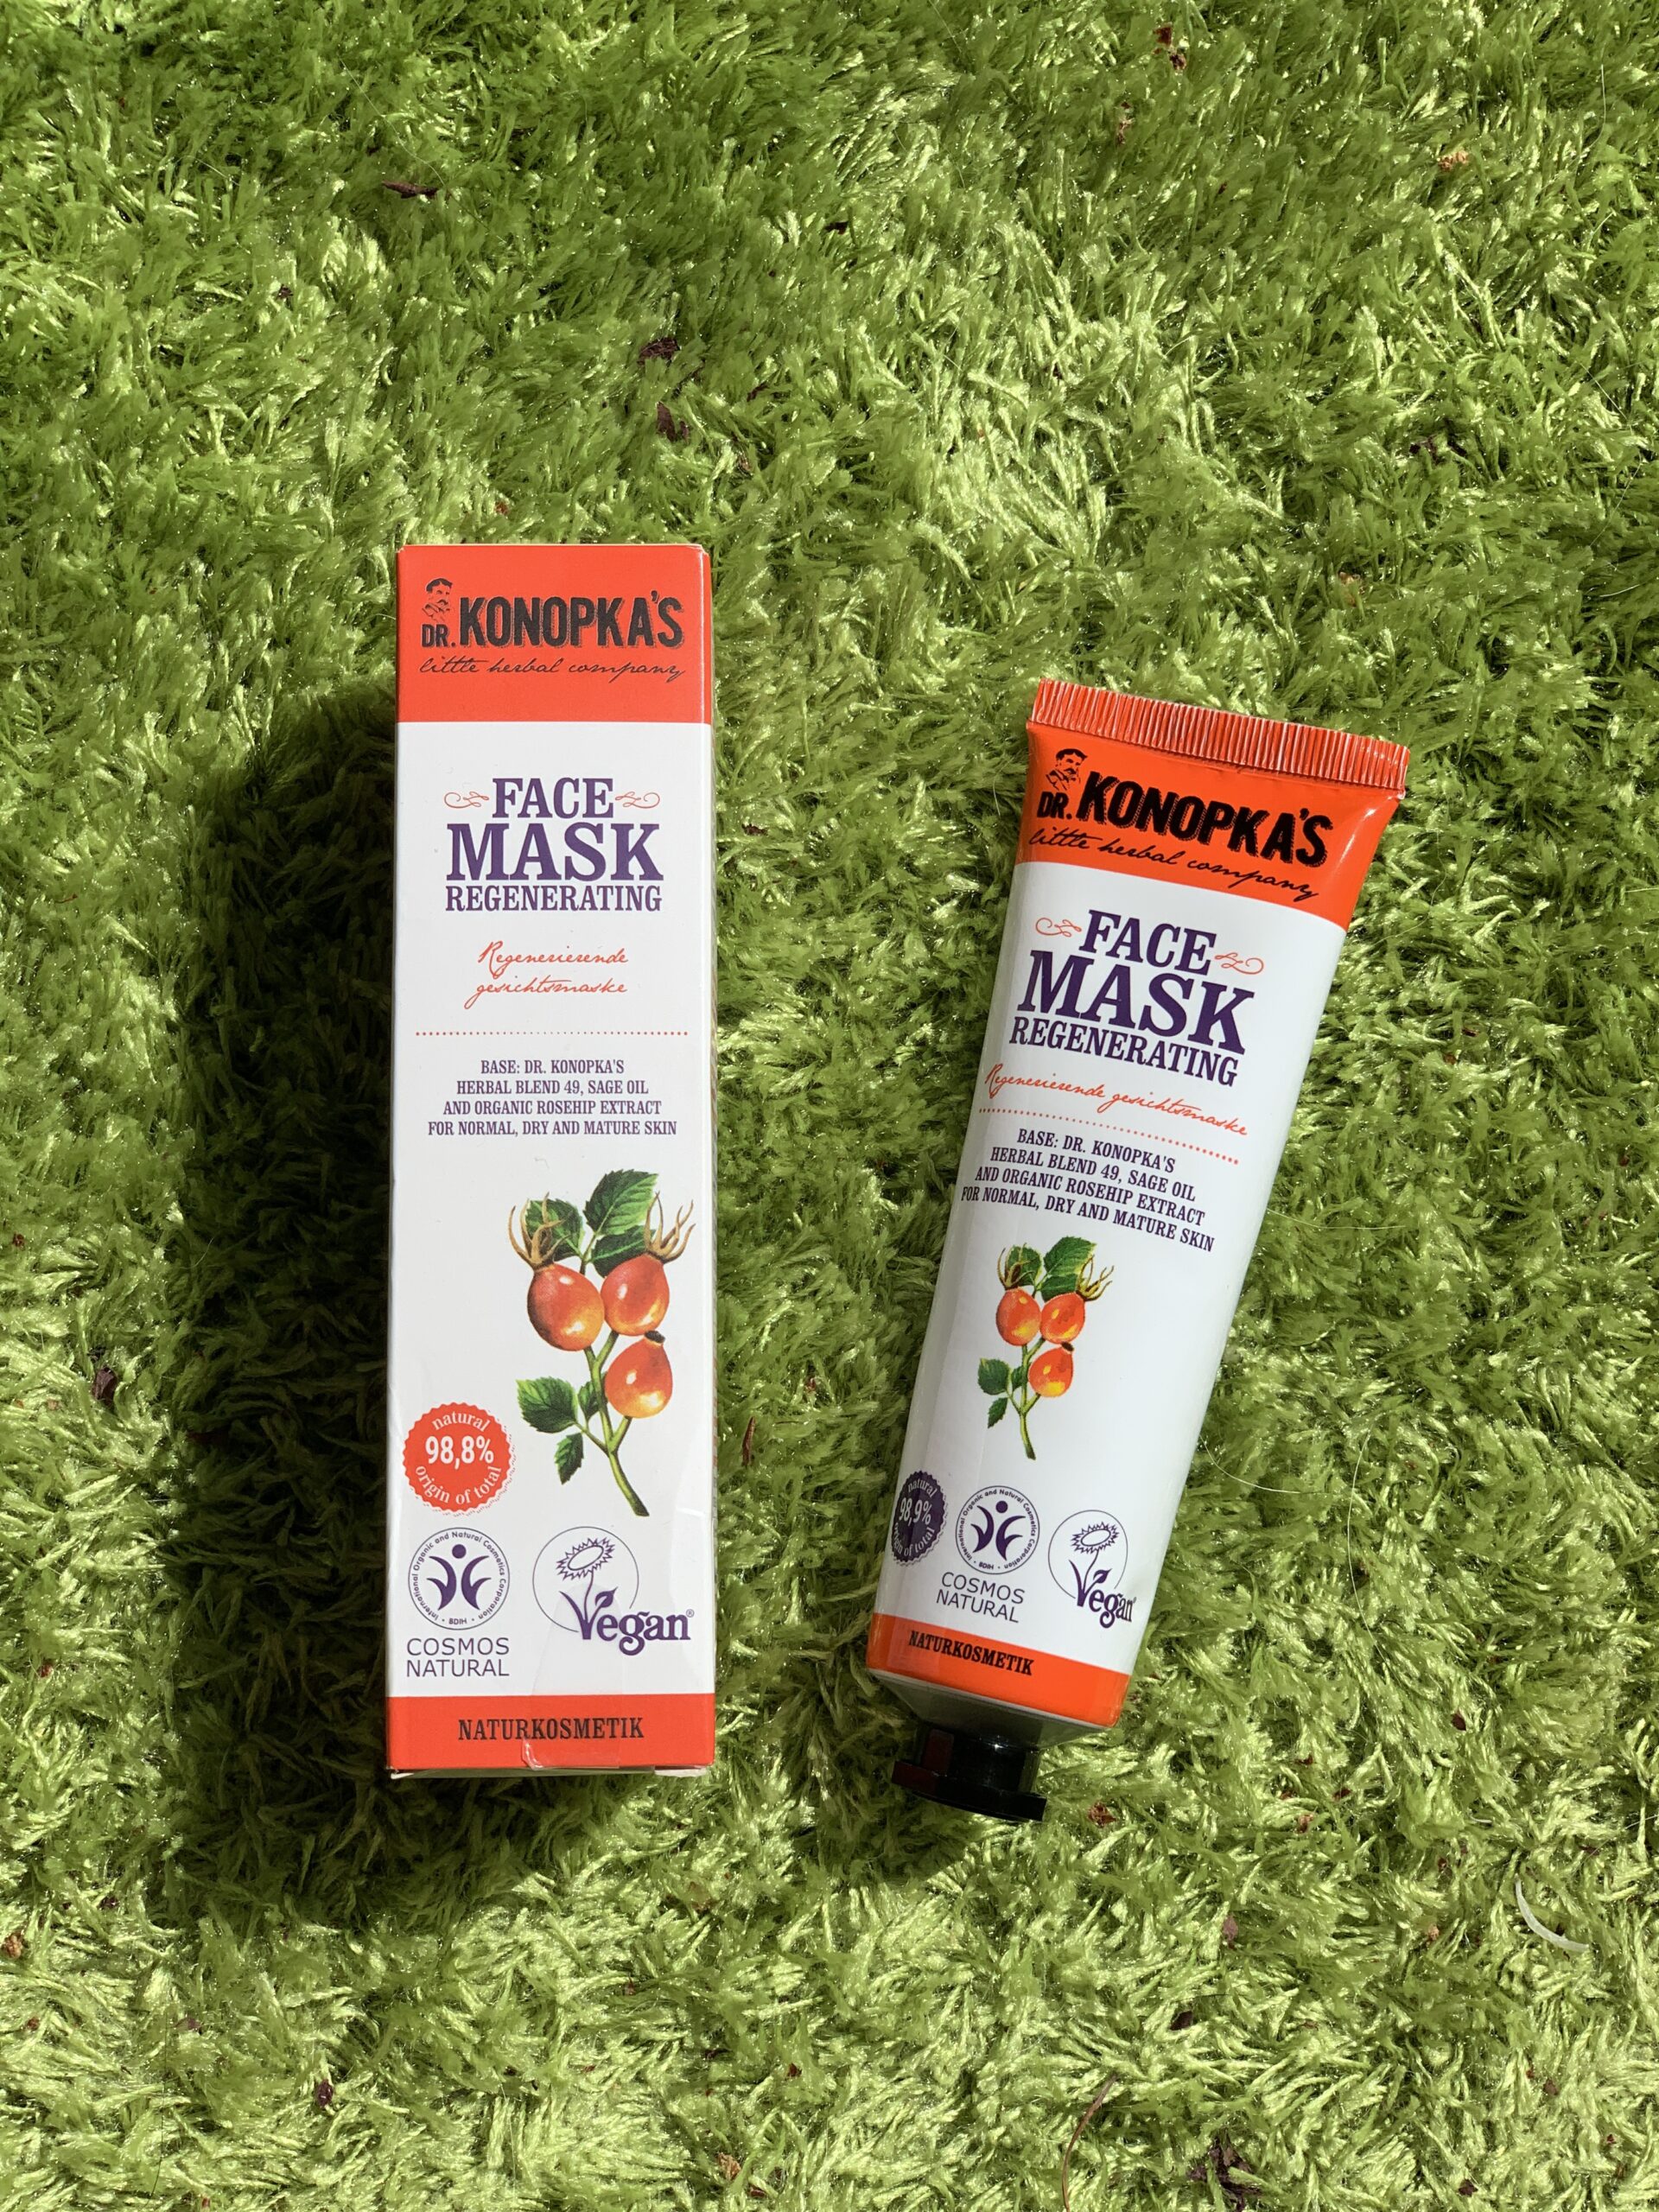 Dr Konopkas Face mask regenerating